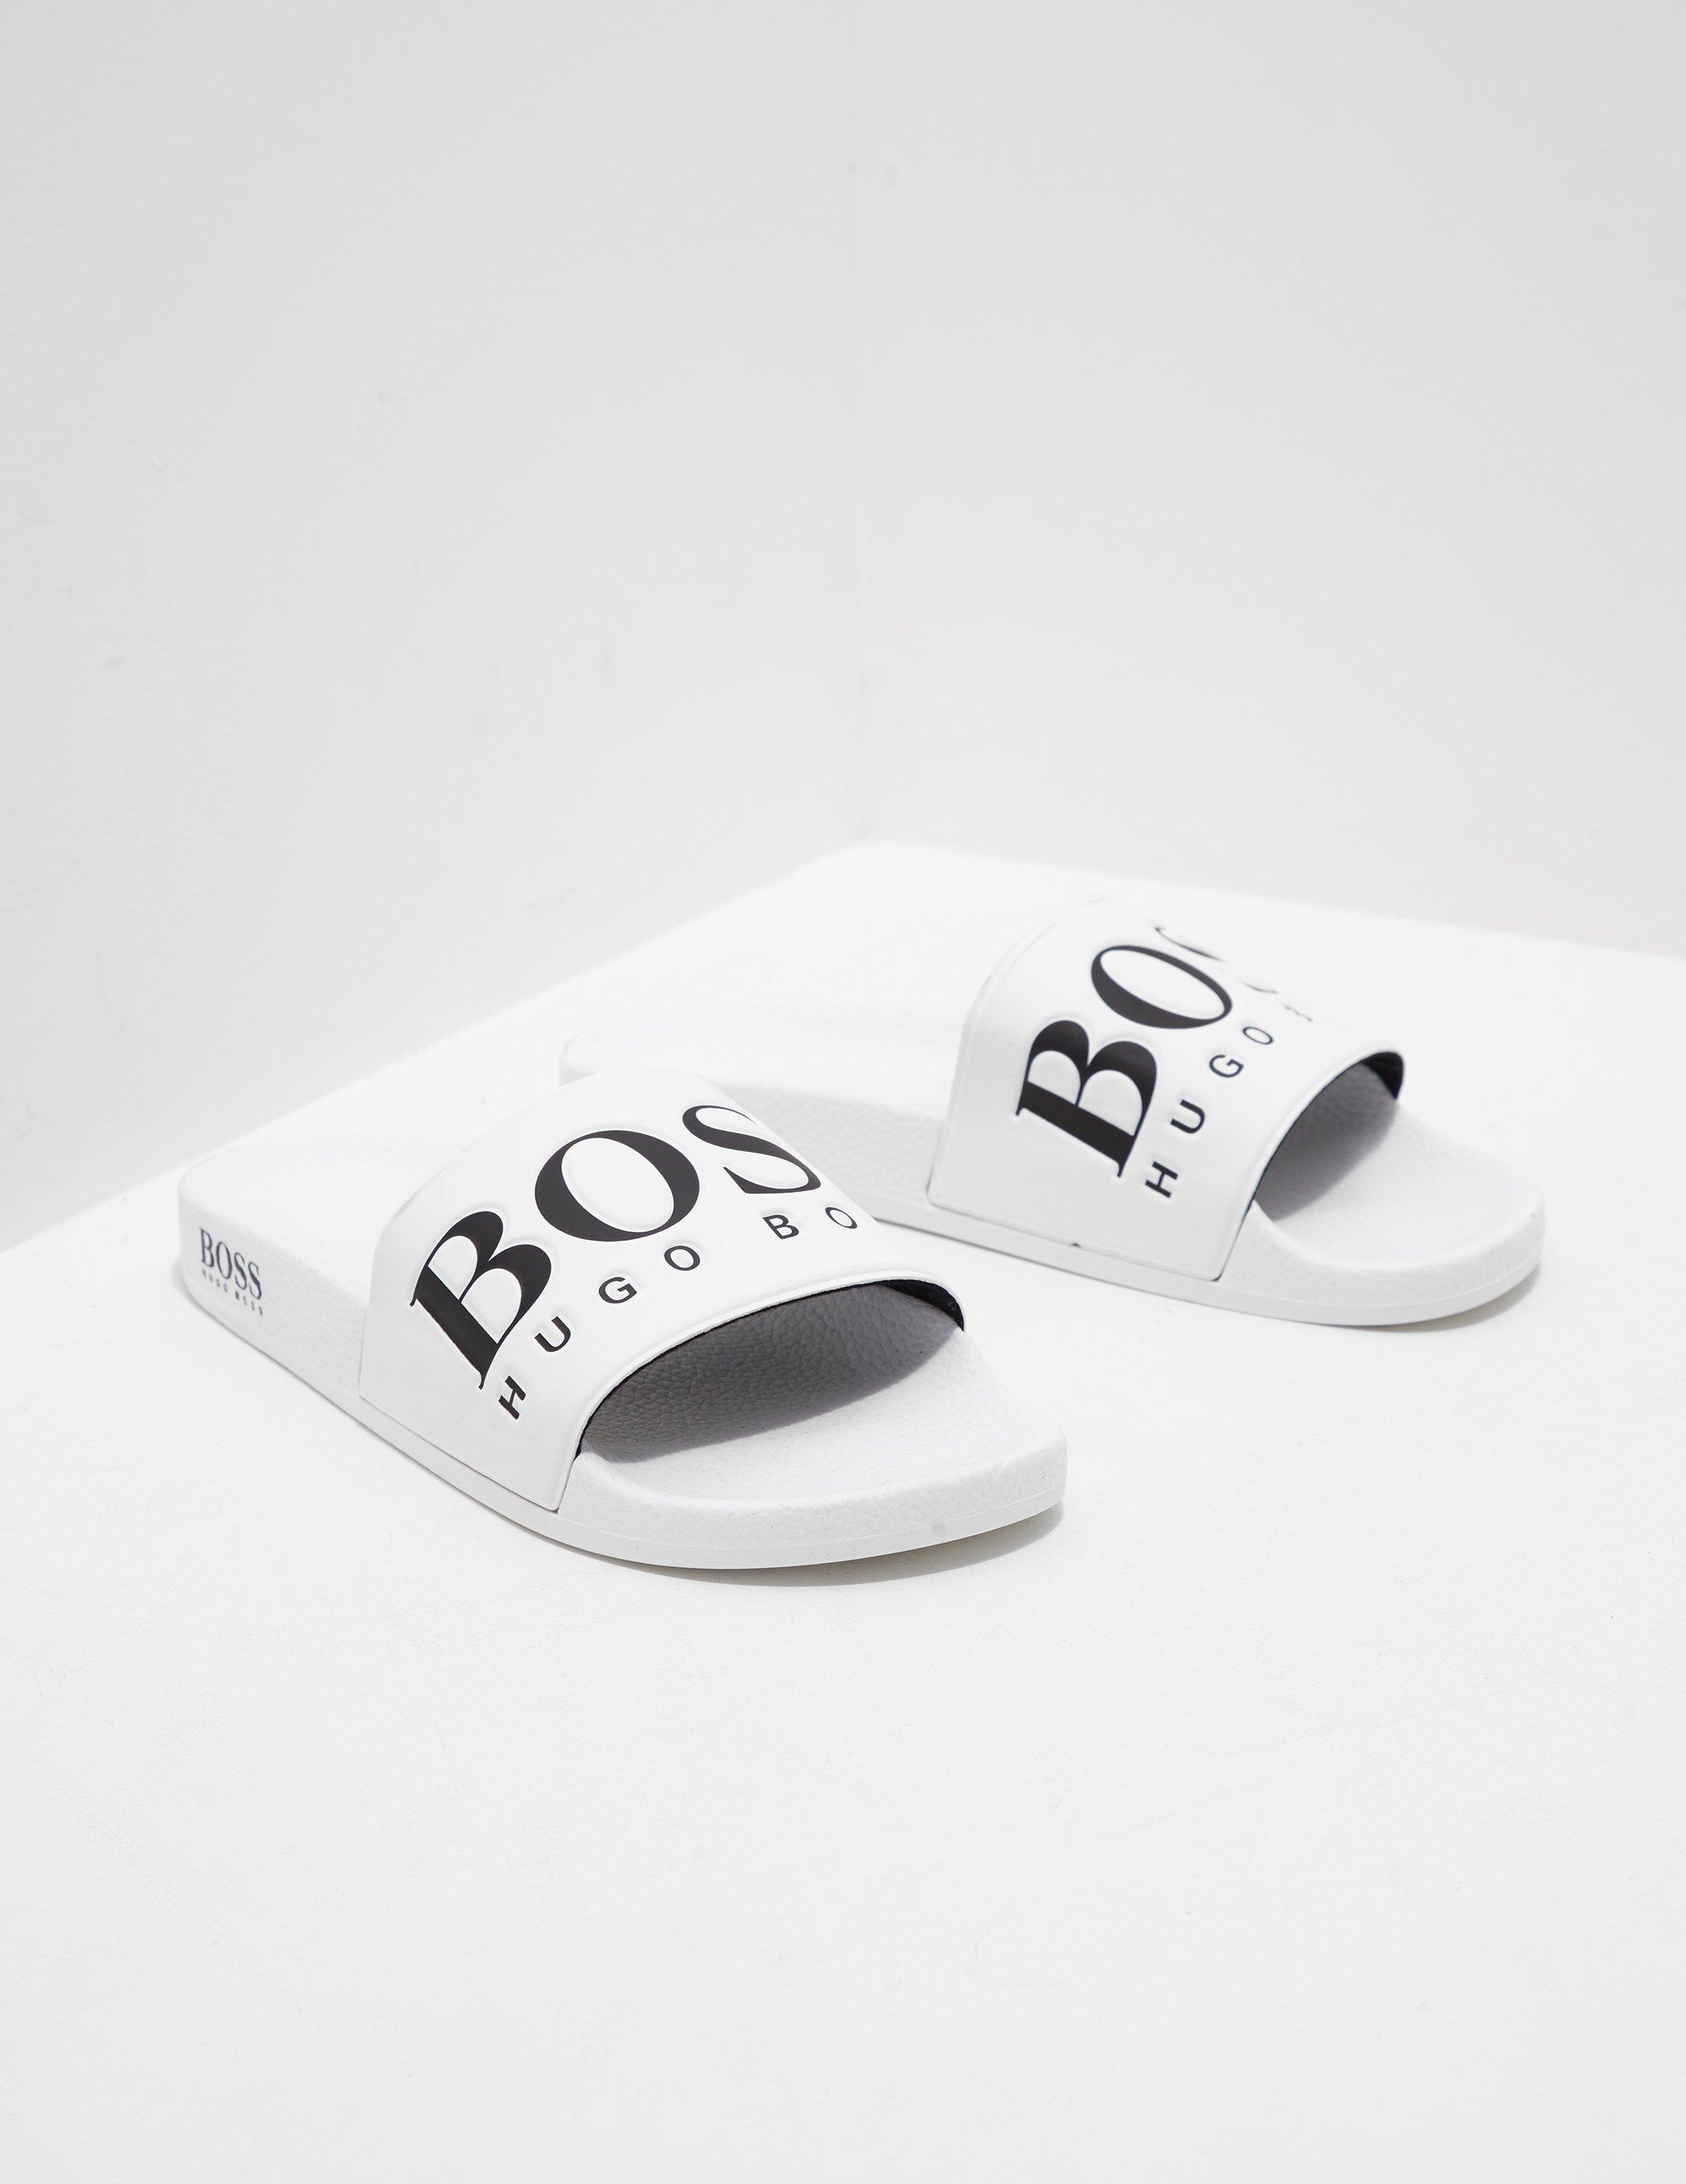 Hugo Boss Men's Solar Flash Open White Slides Sandals Shoes 